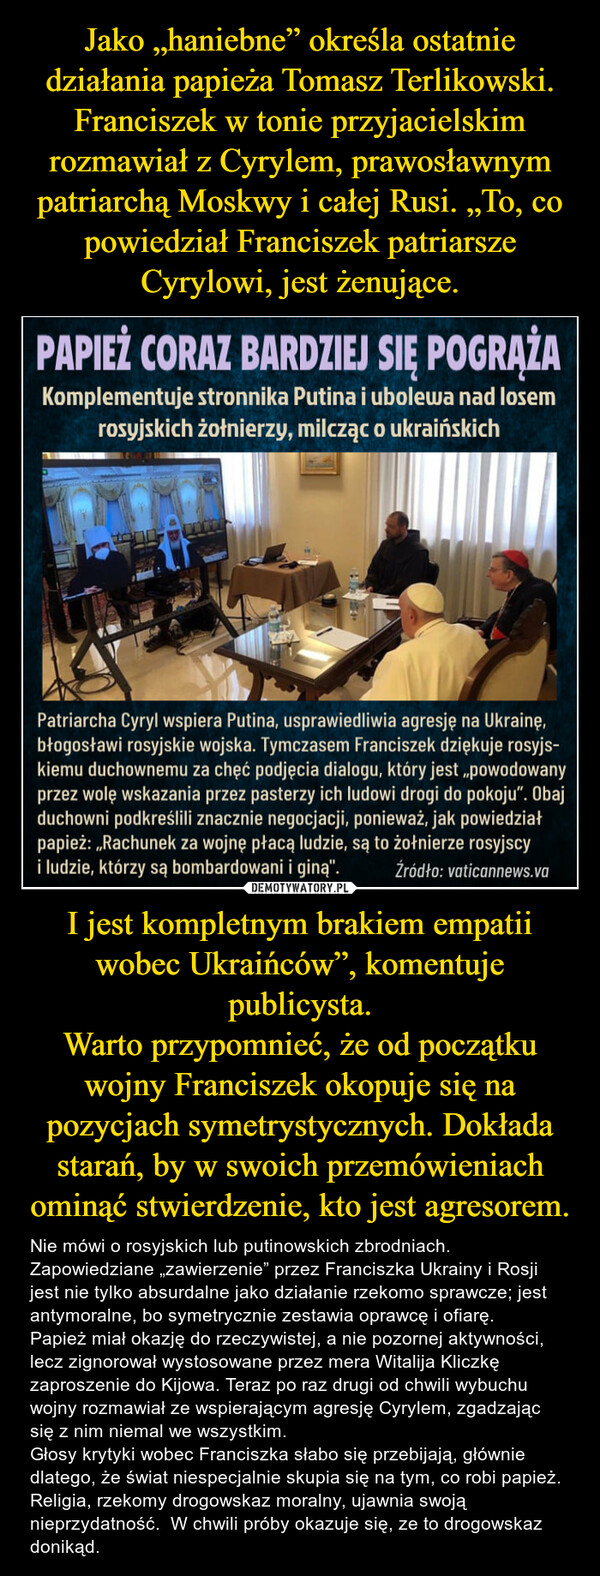 I jest kompletnym brakiem empatii wobec Ukraińców”, komentuje publicysta.Warto przypomnieć, że od początku wojny Franciszek okopuje się na pozycjach symetrystycznych. Dokłada starań, by w swoich przemówieniach ominąć stwierdzenie, kto jest agresorem. – Nie mówi o rosyjskich lub putinowskich zbrodniach.  Zapowiedziane „zawierzenie” przez Franciszka Ukrainy i Rosji jest nie tylko absurdalne jako działanie rzekomo sprawcze; jest antymoralne, bo symetrycznie zestawia oprawcę i ofiarę.Papież miał okazję do rzeczywistej, a nie pozornej aktywności, lecz zignorował wystosowane przez mera Witalija Kliczkę zaproszenie do Kijowa. Teraz po raz drugi od chwili wybuchu wojny rozmawiał ze wspierającym agresję Cyrylem, zgadzając się z nim niemal we wszystkim. Głosy krytyki wobec Franciszka słabo się przebijają, głównie dlatego, że świat niespecjalnie skupia się na tym, co robi papież. Religia, rzekomy drogowskaz moralny, ujawnia swoją nieprzydatność.  W chwili próby okazuje się, ze to drogowskaz donikąd. 